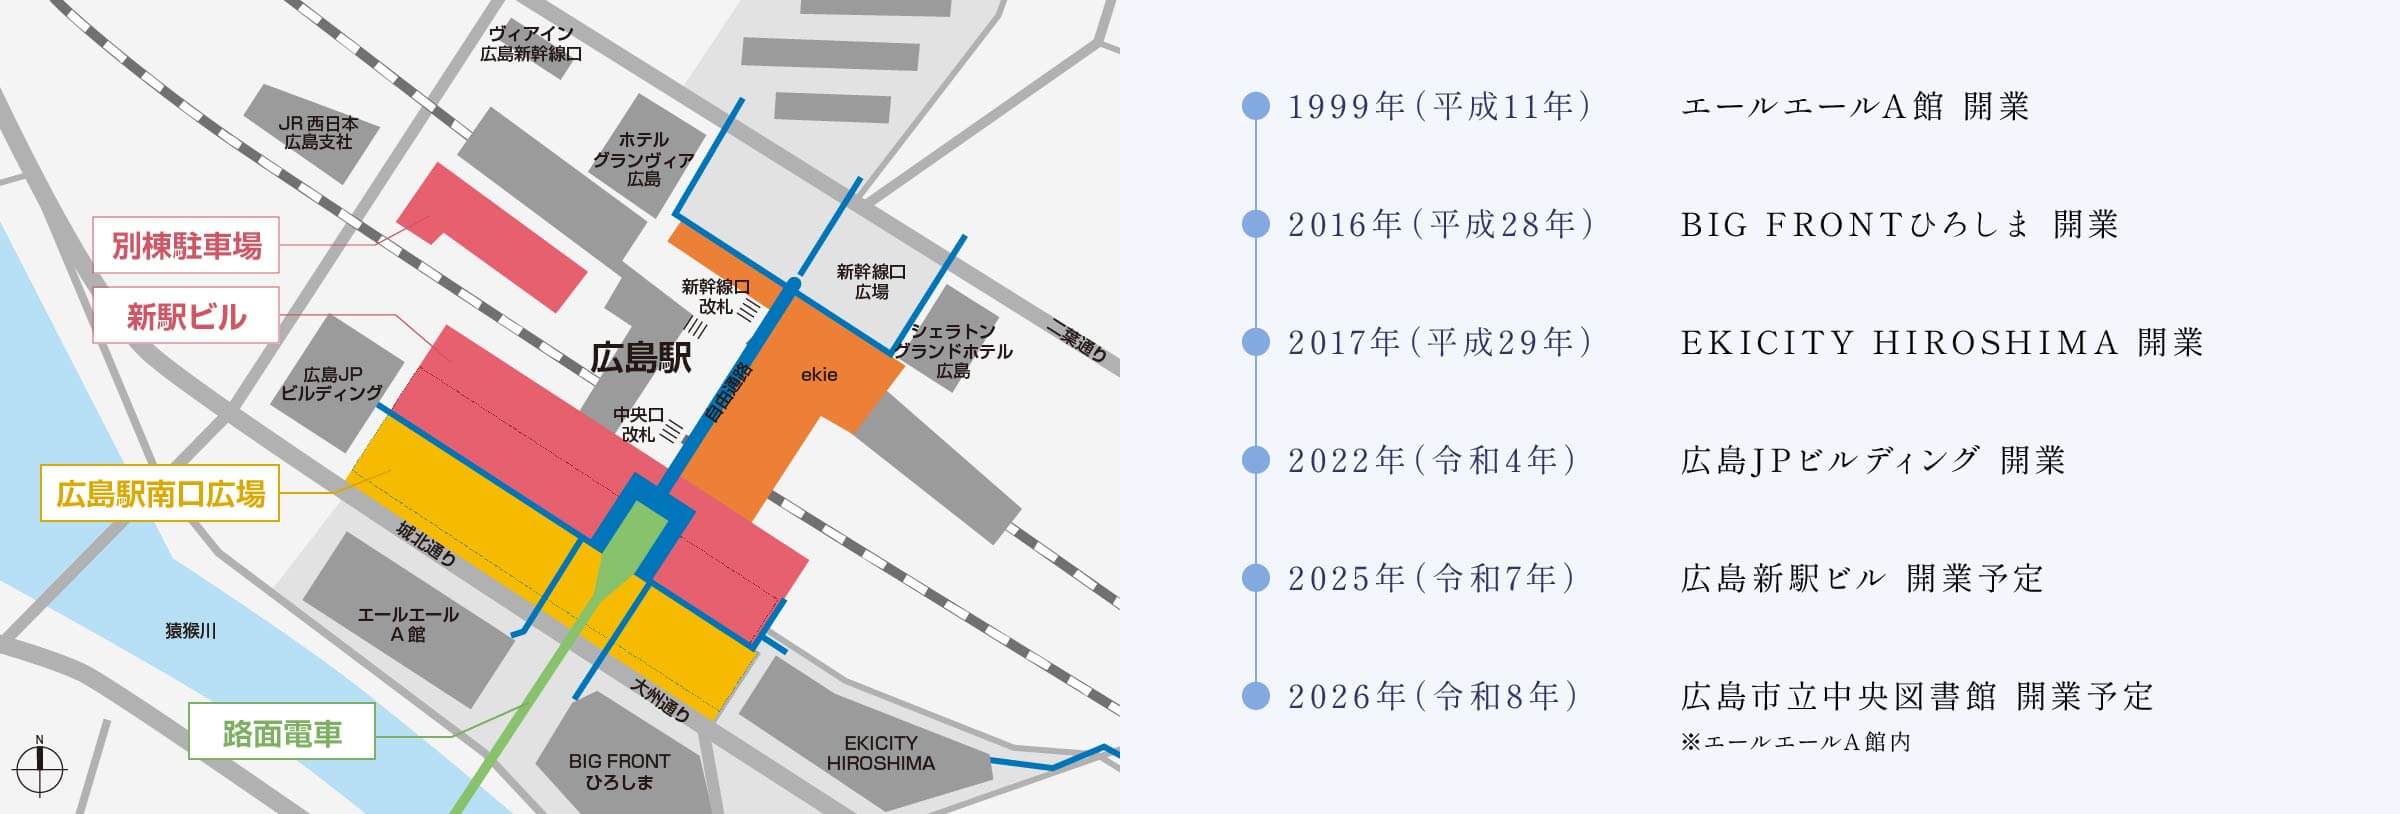 広島駅周辺の主な出来事 1992年 エールエールA館開業 〜 2026年 広島市立中央図書館開業予定